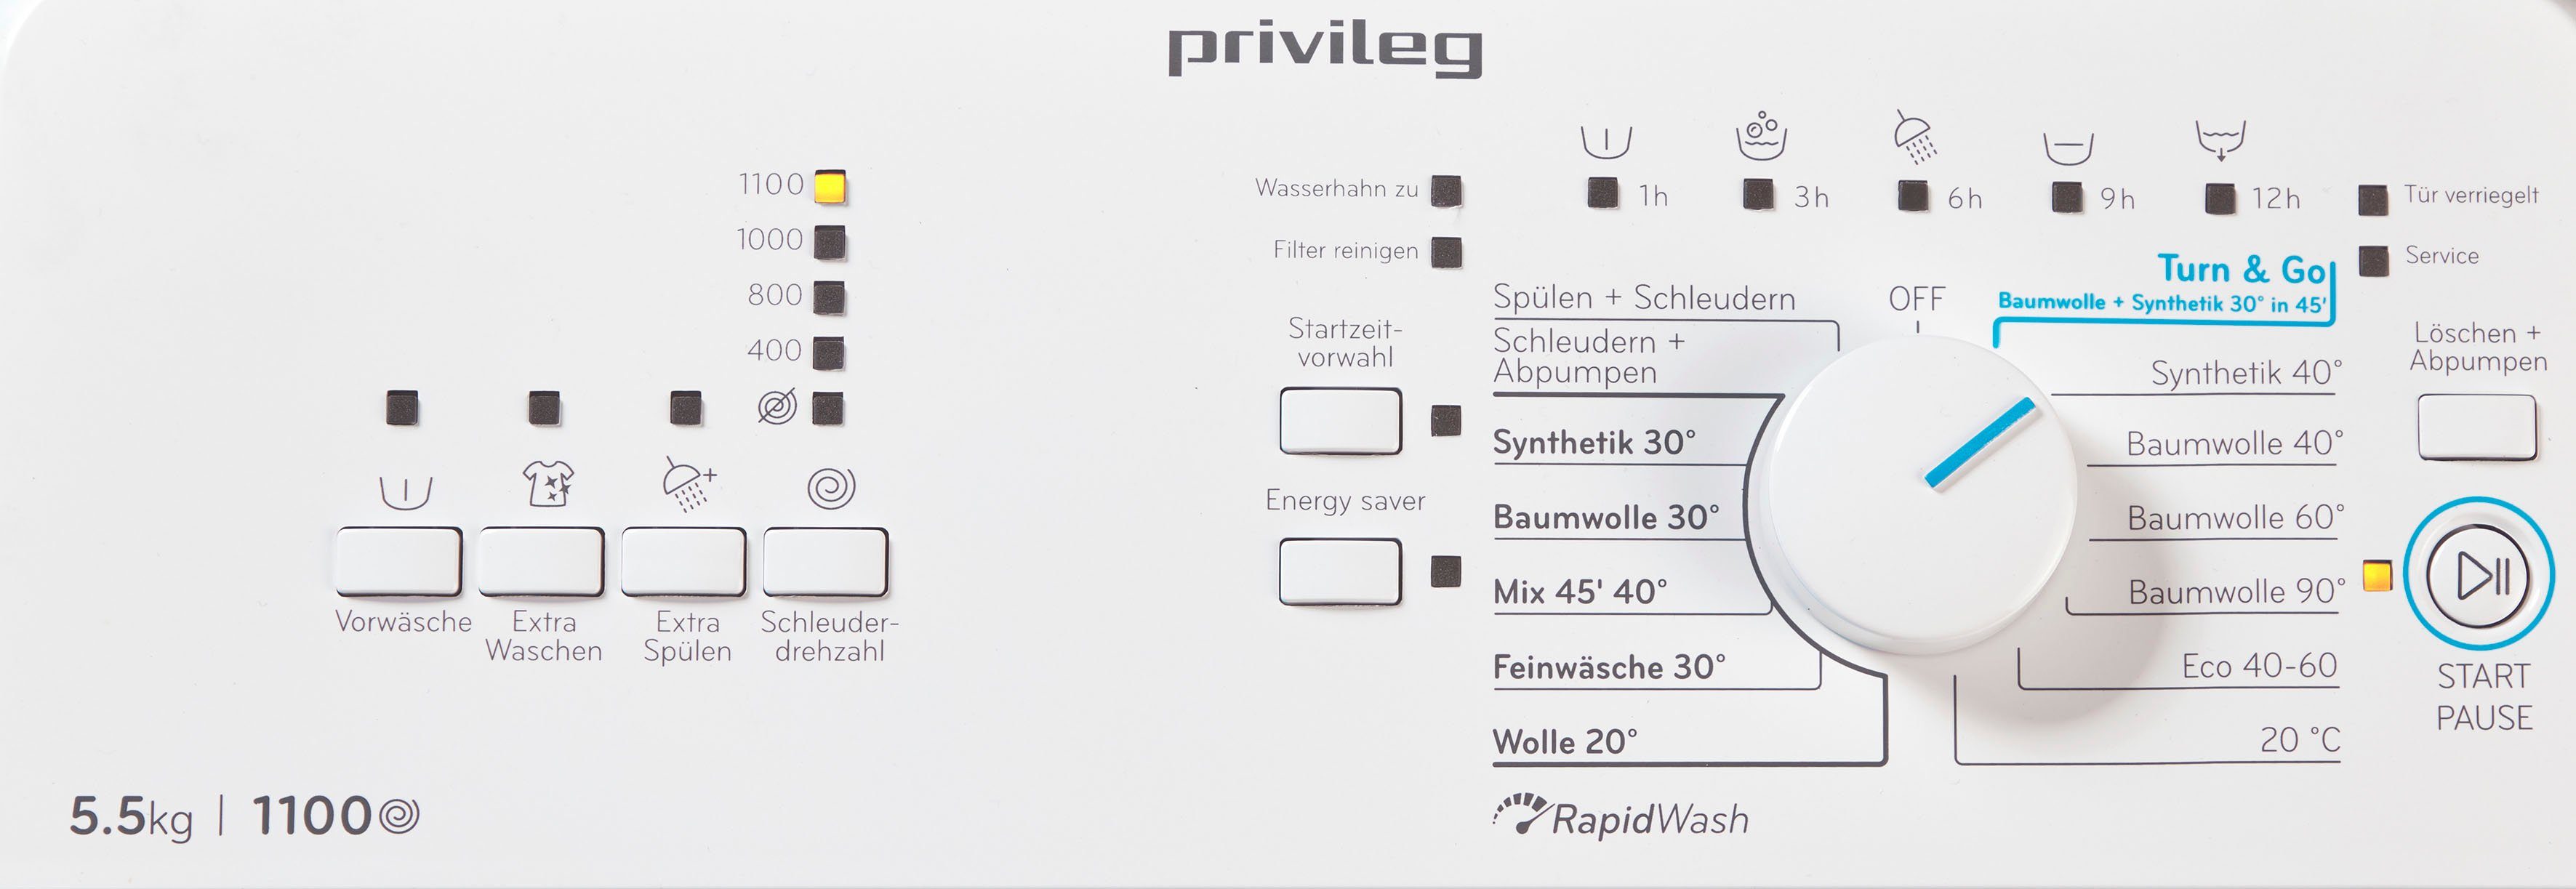 Waschmaschine LD55 U/min 5,5 kg, DE, Toplader PWT Privileg 1100